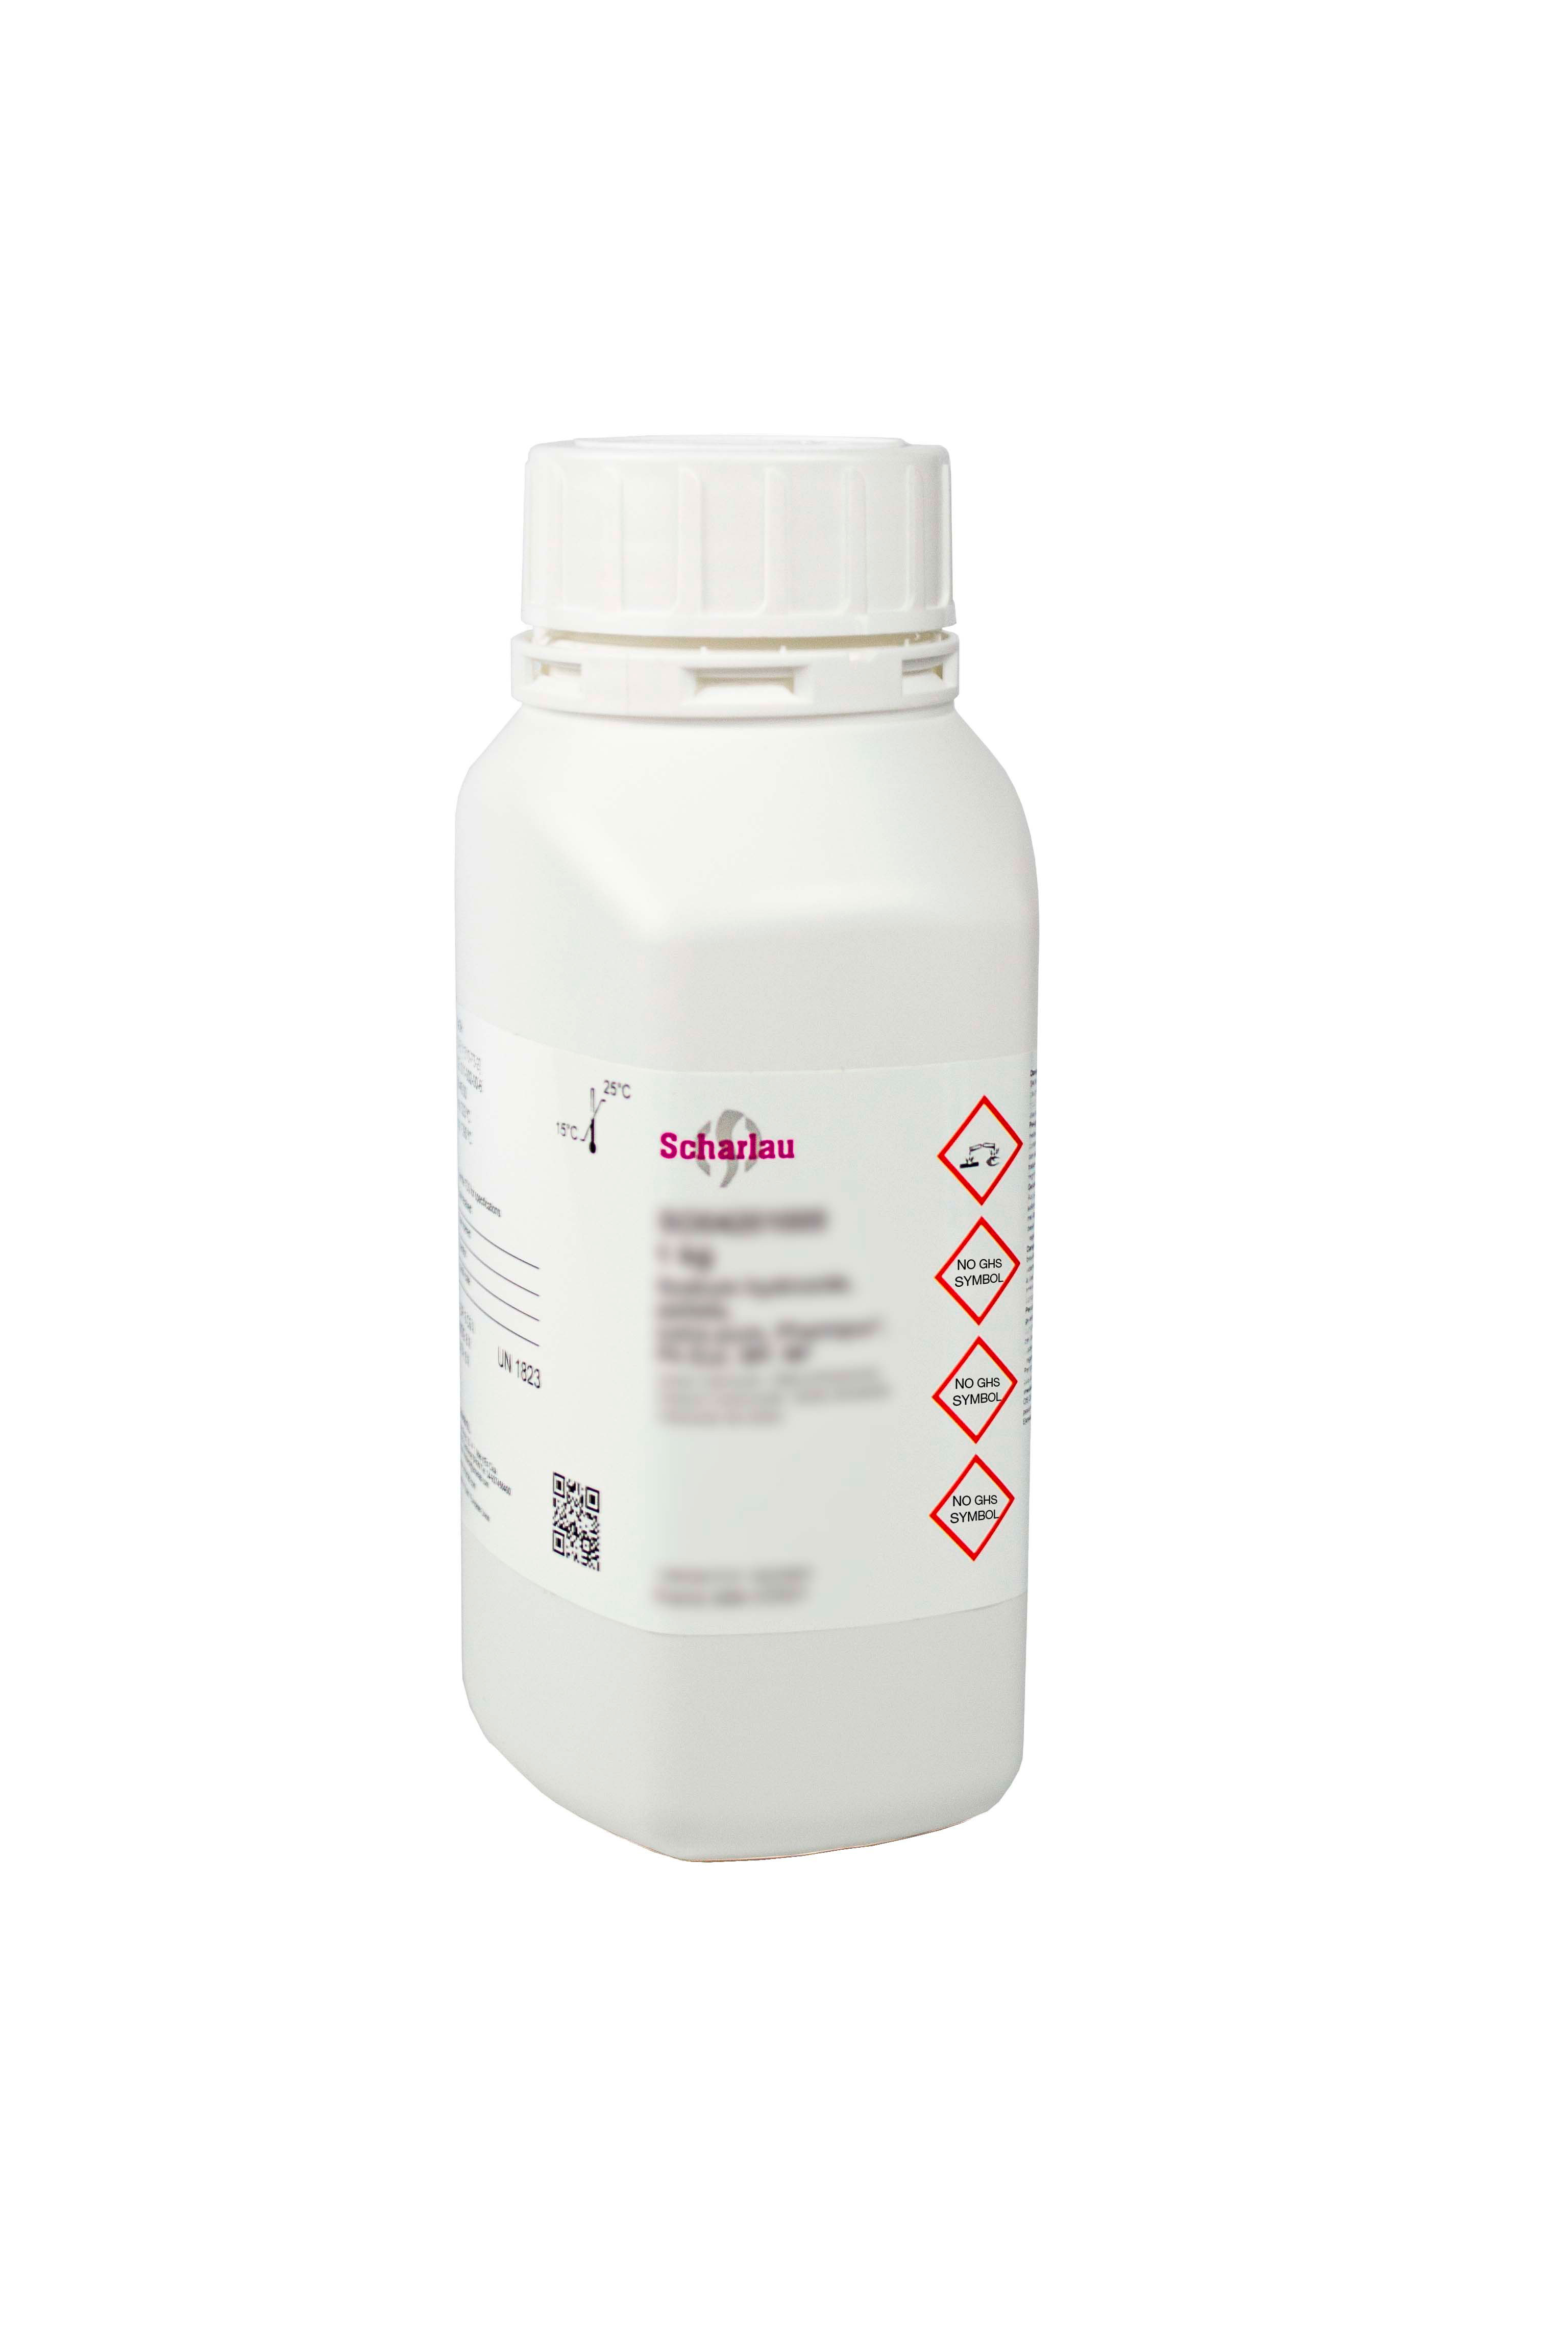 Hierro(II) sulfato heptahidrato, Pharmpur®, Ph Eur, BP, USP